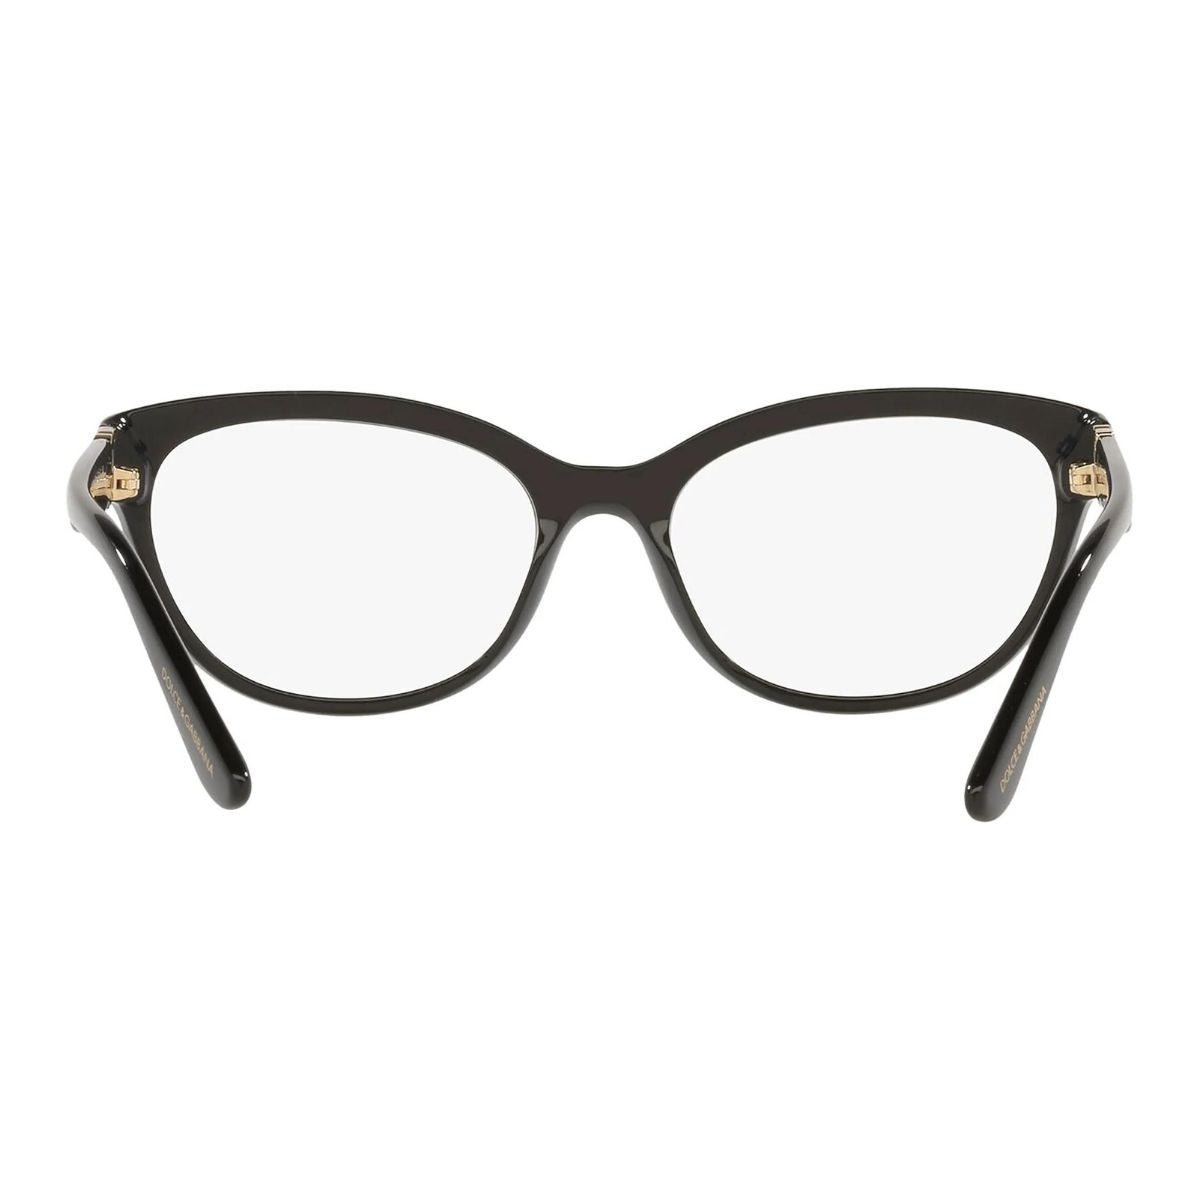 "Dolce&Gabbana 3342 501 trendy eyewear frame for women's at optorium"